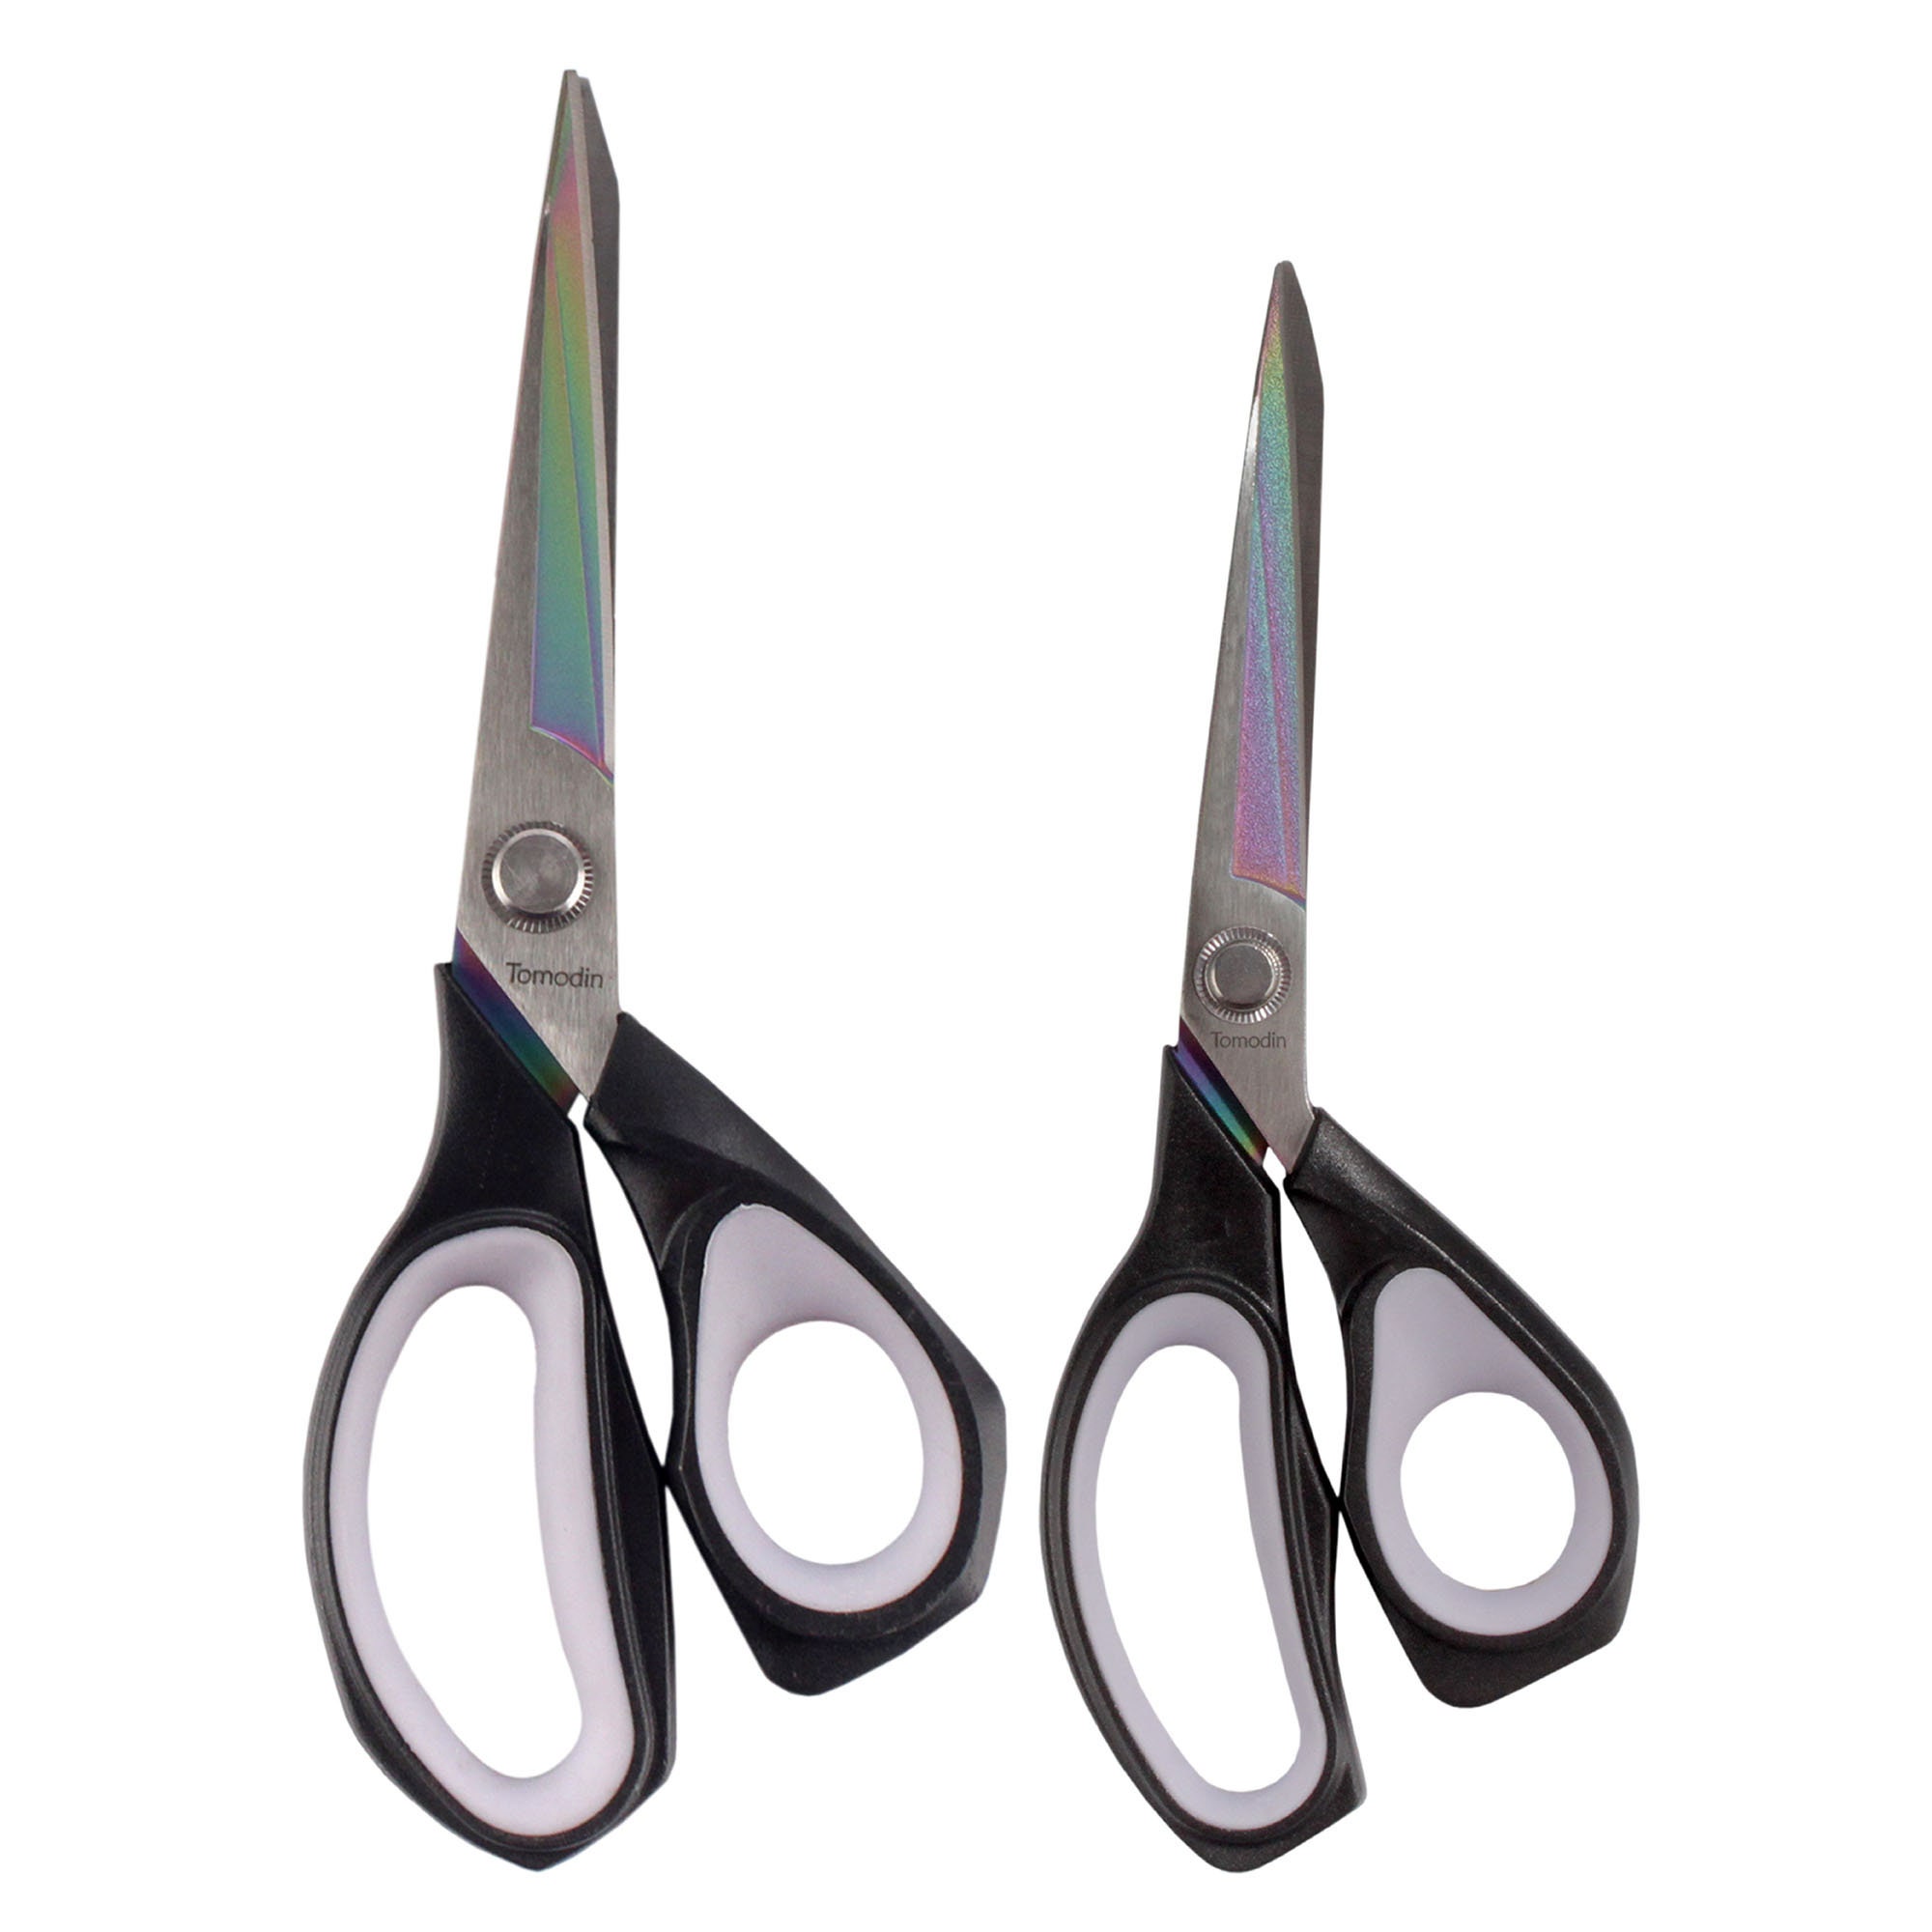 2 Pair Forged Titanium Fabric Scissors 8.5 & 9.5 